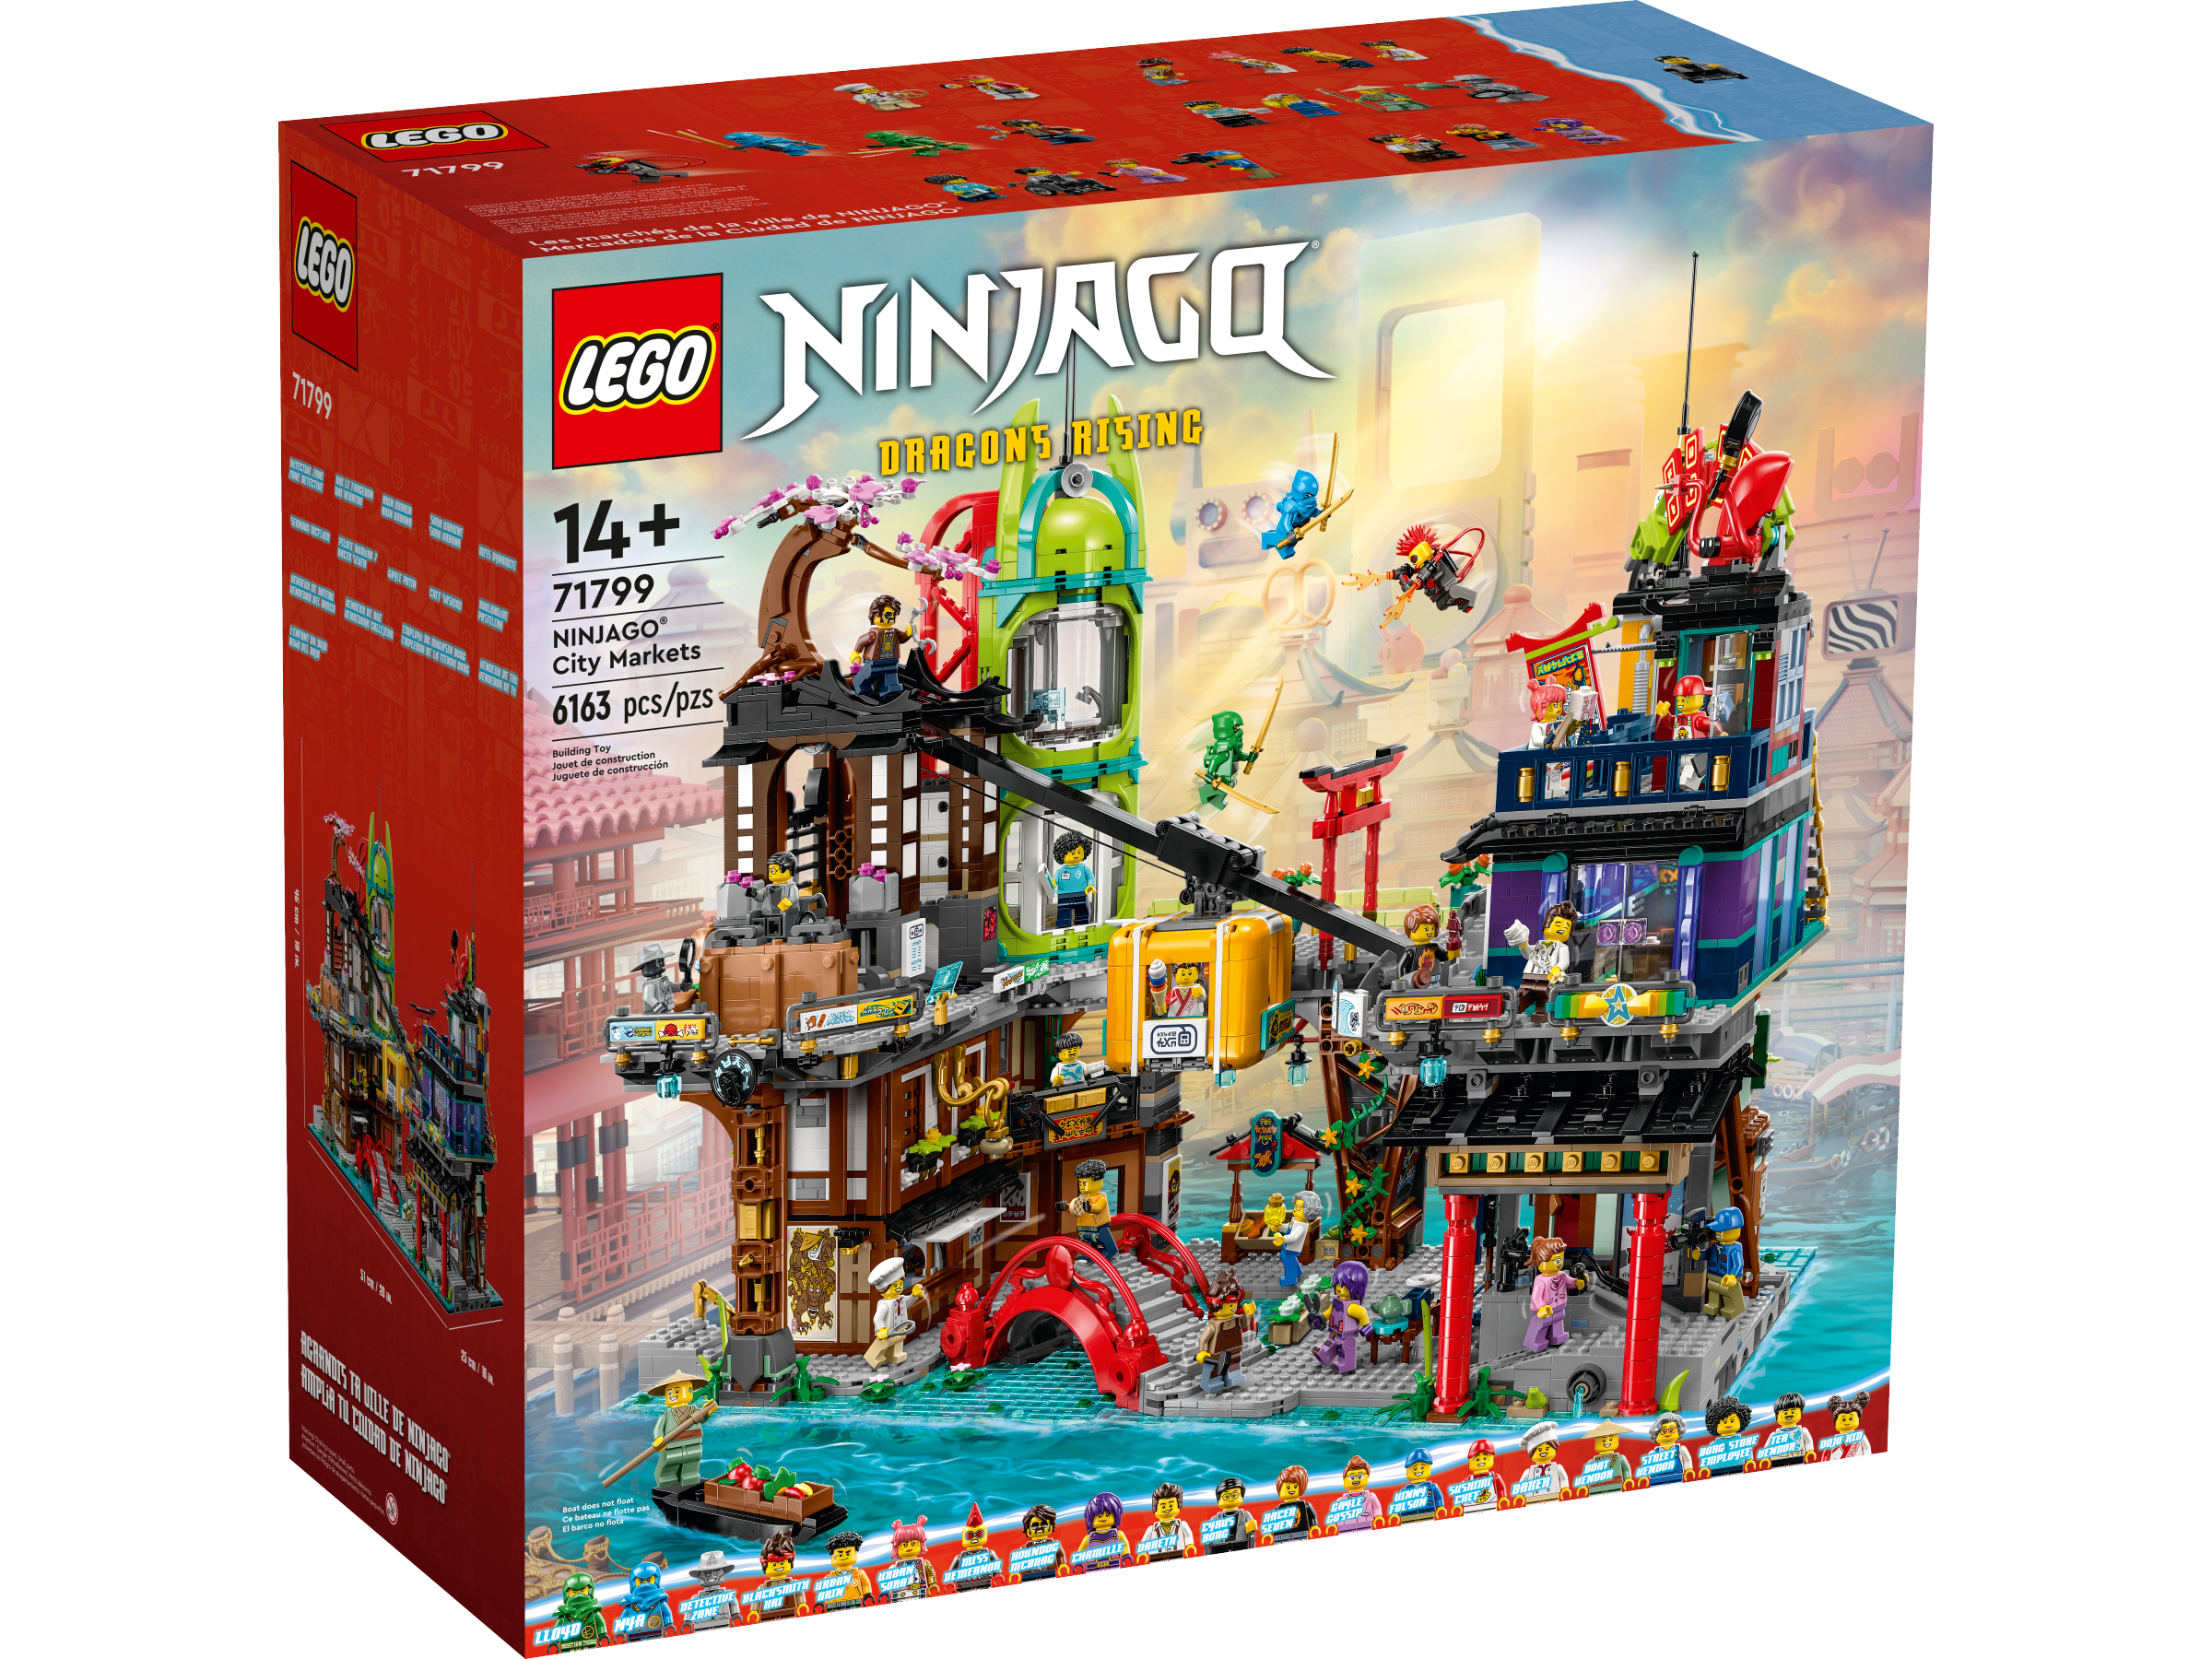 LEGO Ninjago Die Märkte von Ninjago City (71799) - im GOLDSTIEN.SHOP verfügbar mit Gratisversand ab Schweizer Lager! (5702017435787)